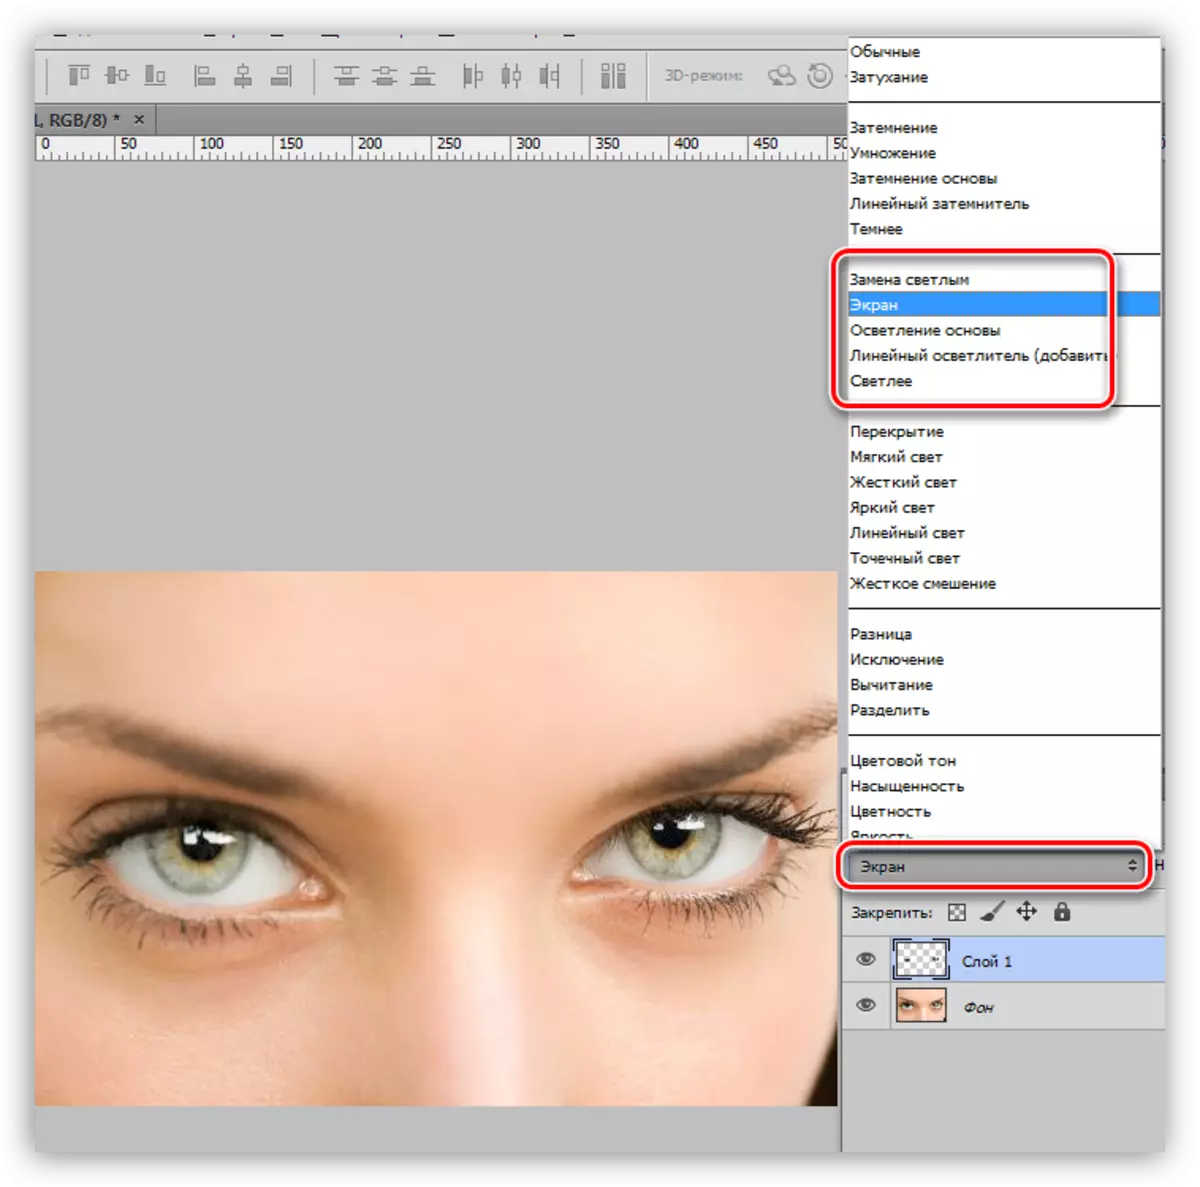 Mijenjanje miješanje režim za sloj irisa na ekranu prilikom dodjele oko Photoshop